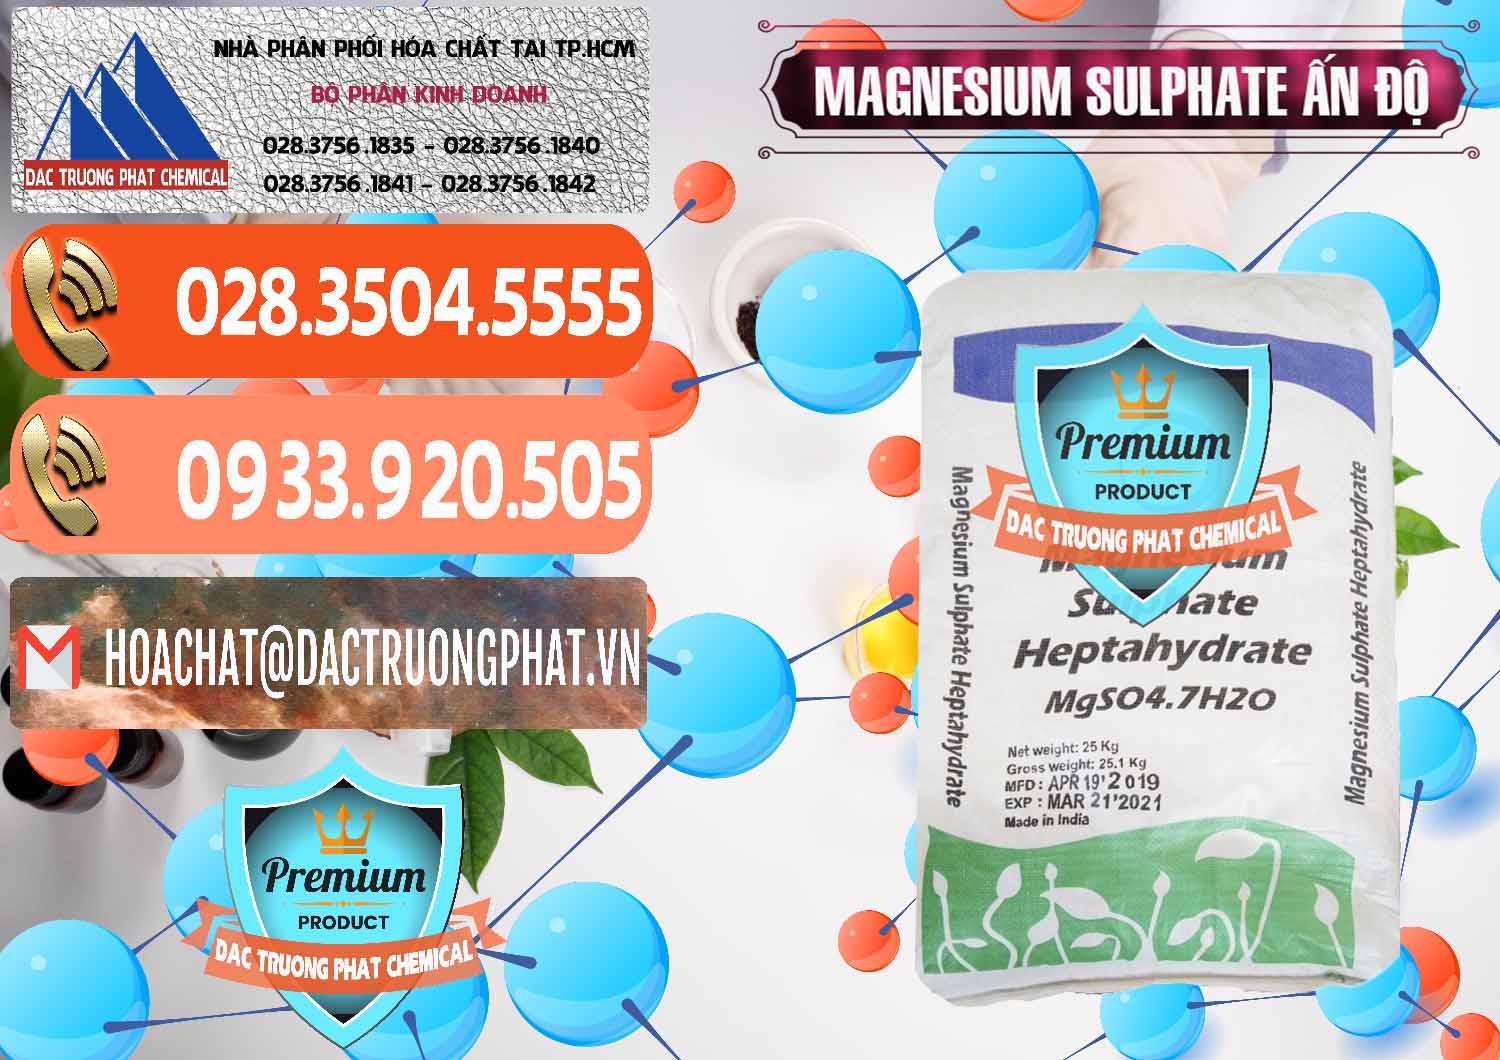 Đơn vị chuyên bán ( cung ứng ) MGSO4.7H2O – Magnesium Sulphate Heptahydrate Ấn Độ India - 0362 - Nơi phân phối - cung ứng hóa chất tại TP.HCM - hoachatmientay.com